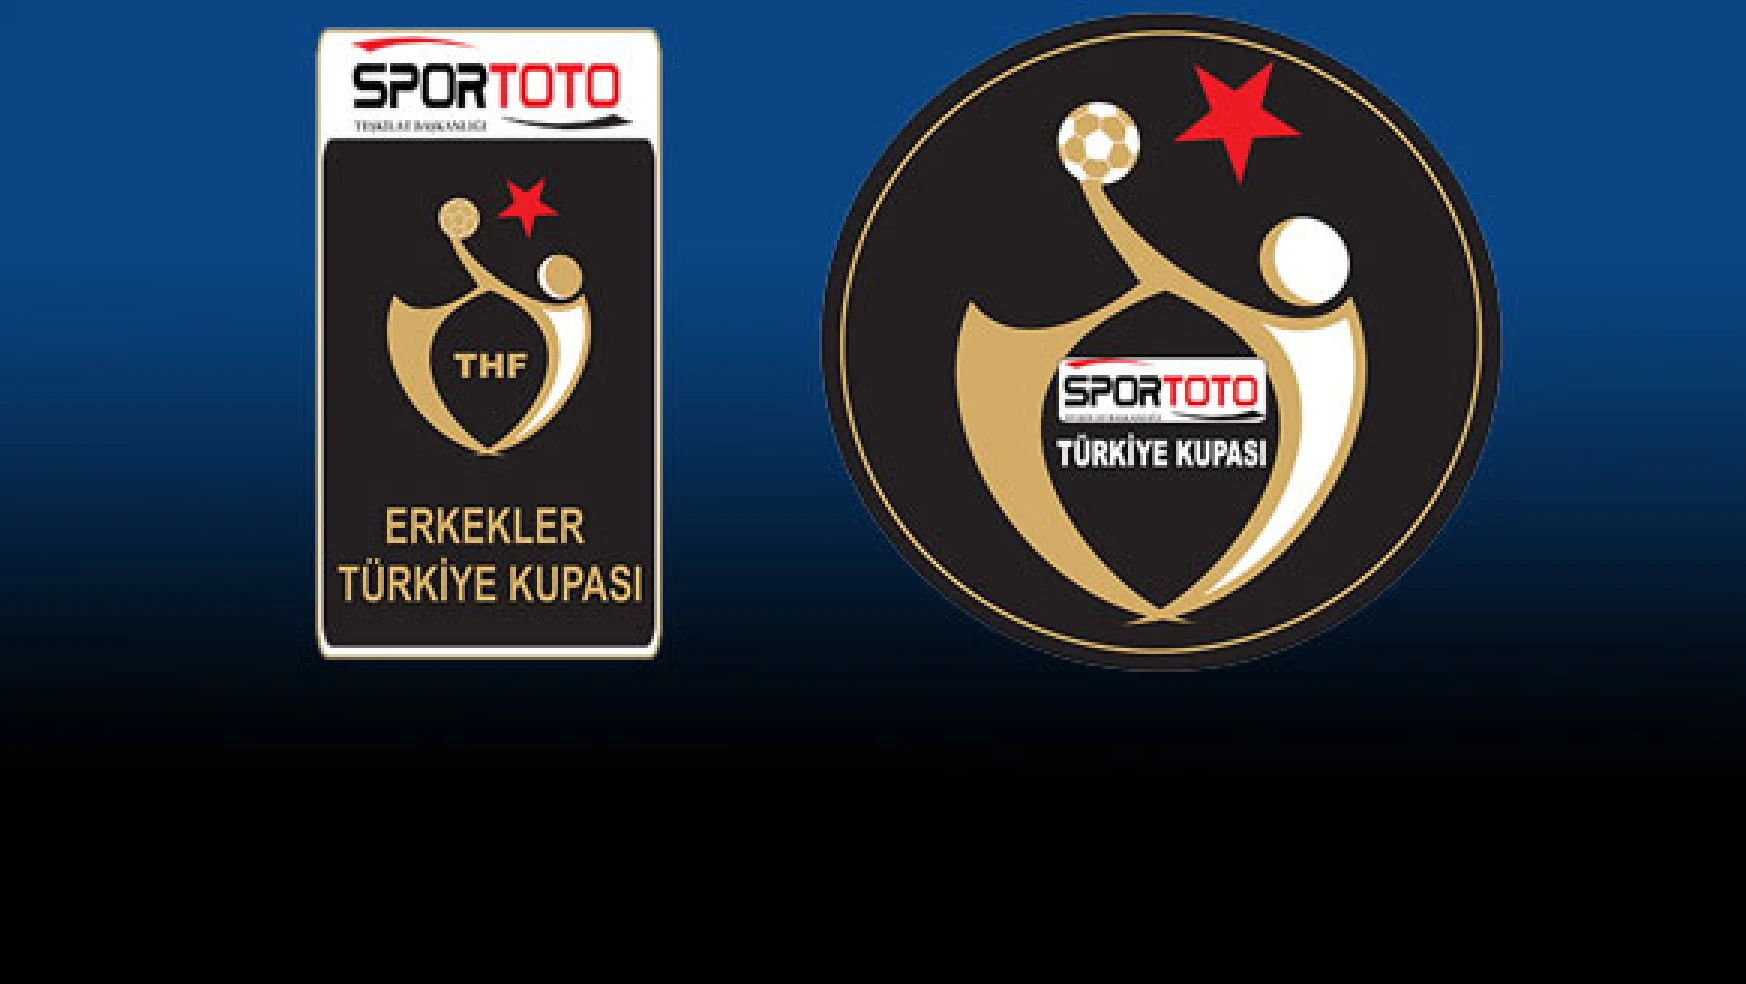 Sportoto Türkiye Kupası klibi